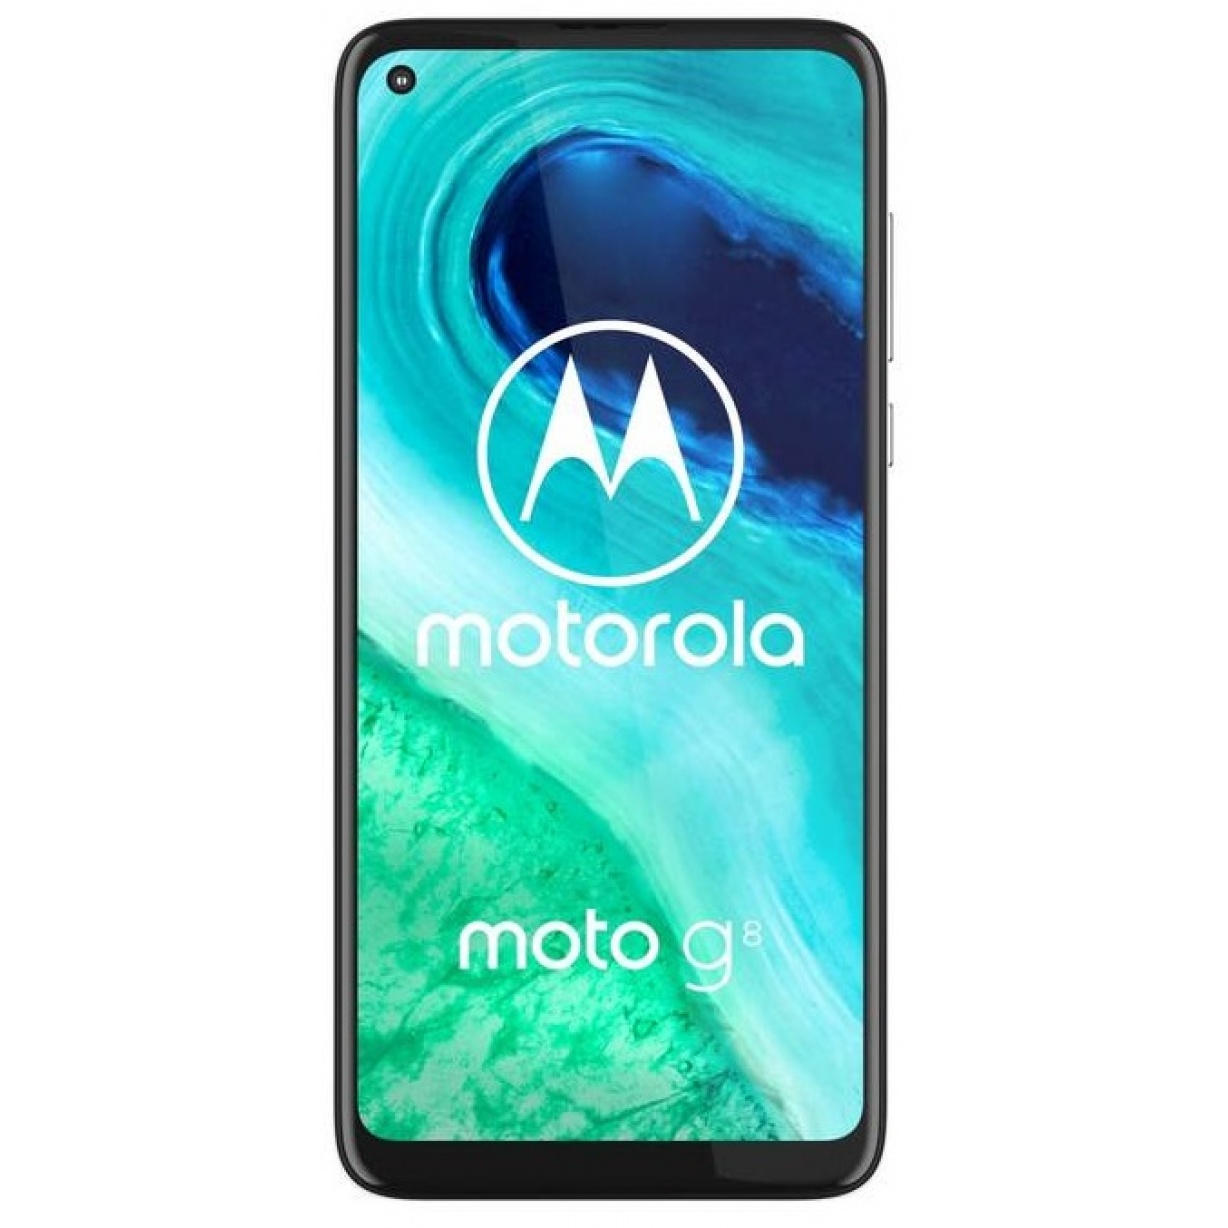 Motorola Moto G8 64GB Dual-SIM White